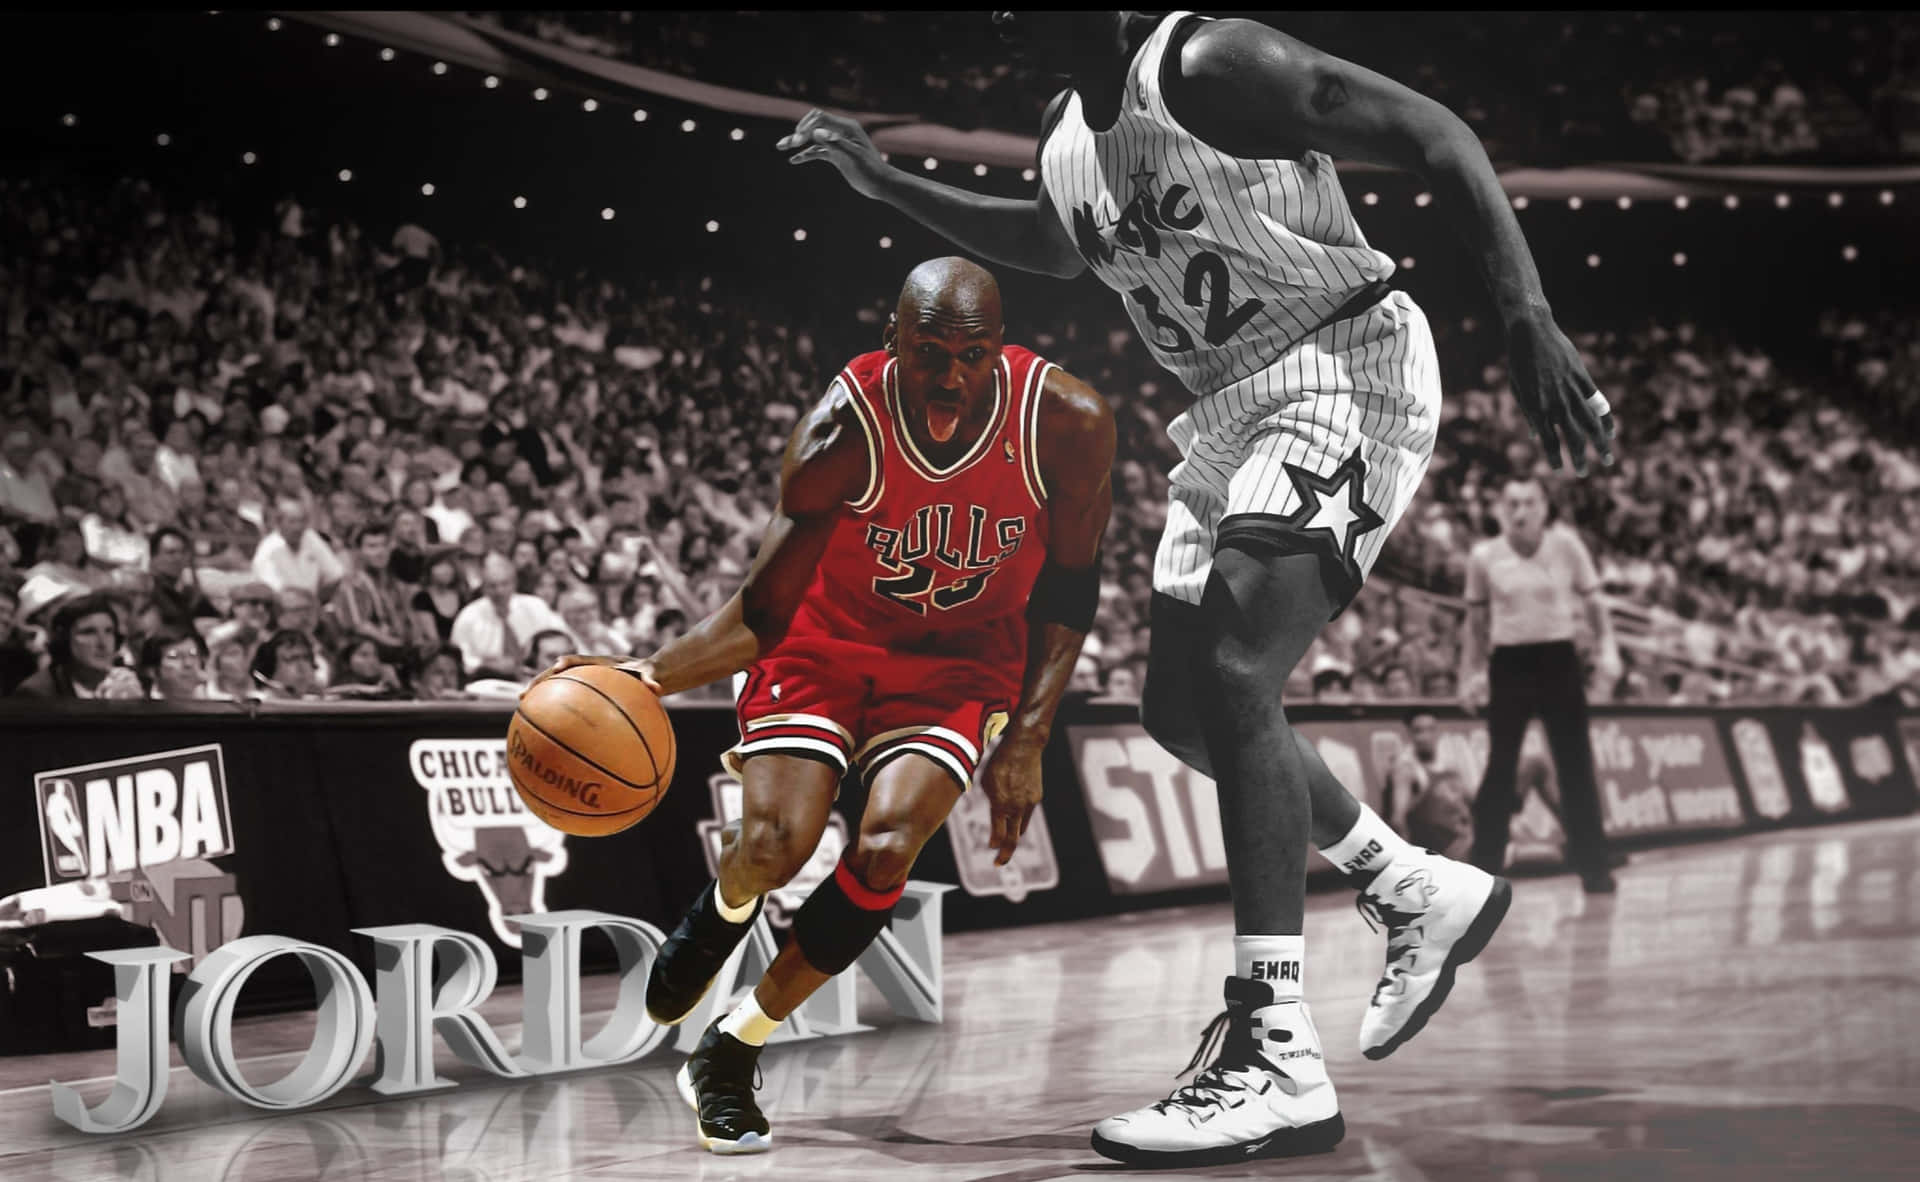 Legendarisknba Basketballspiller Michael Jordan.